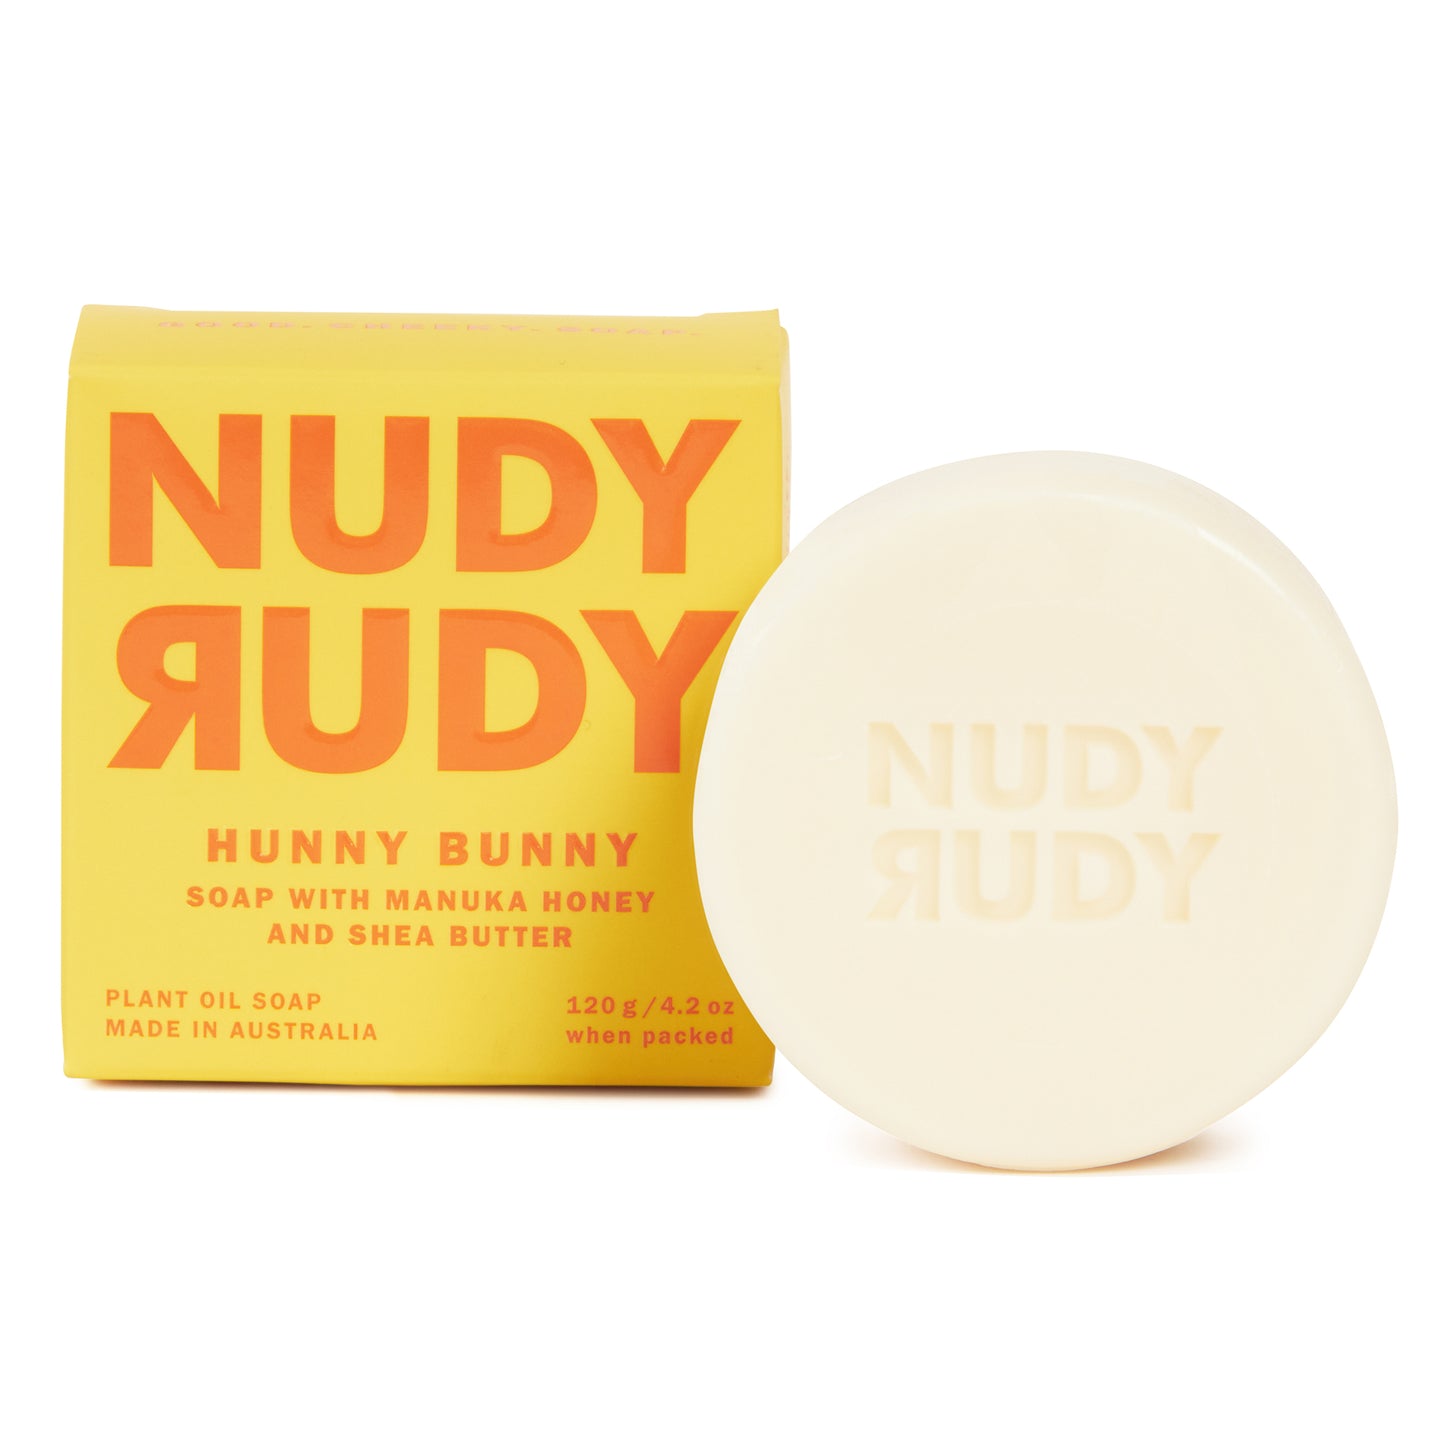 Hunny Bunny Soapy, Sudsy Bundle